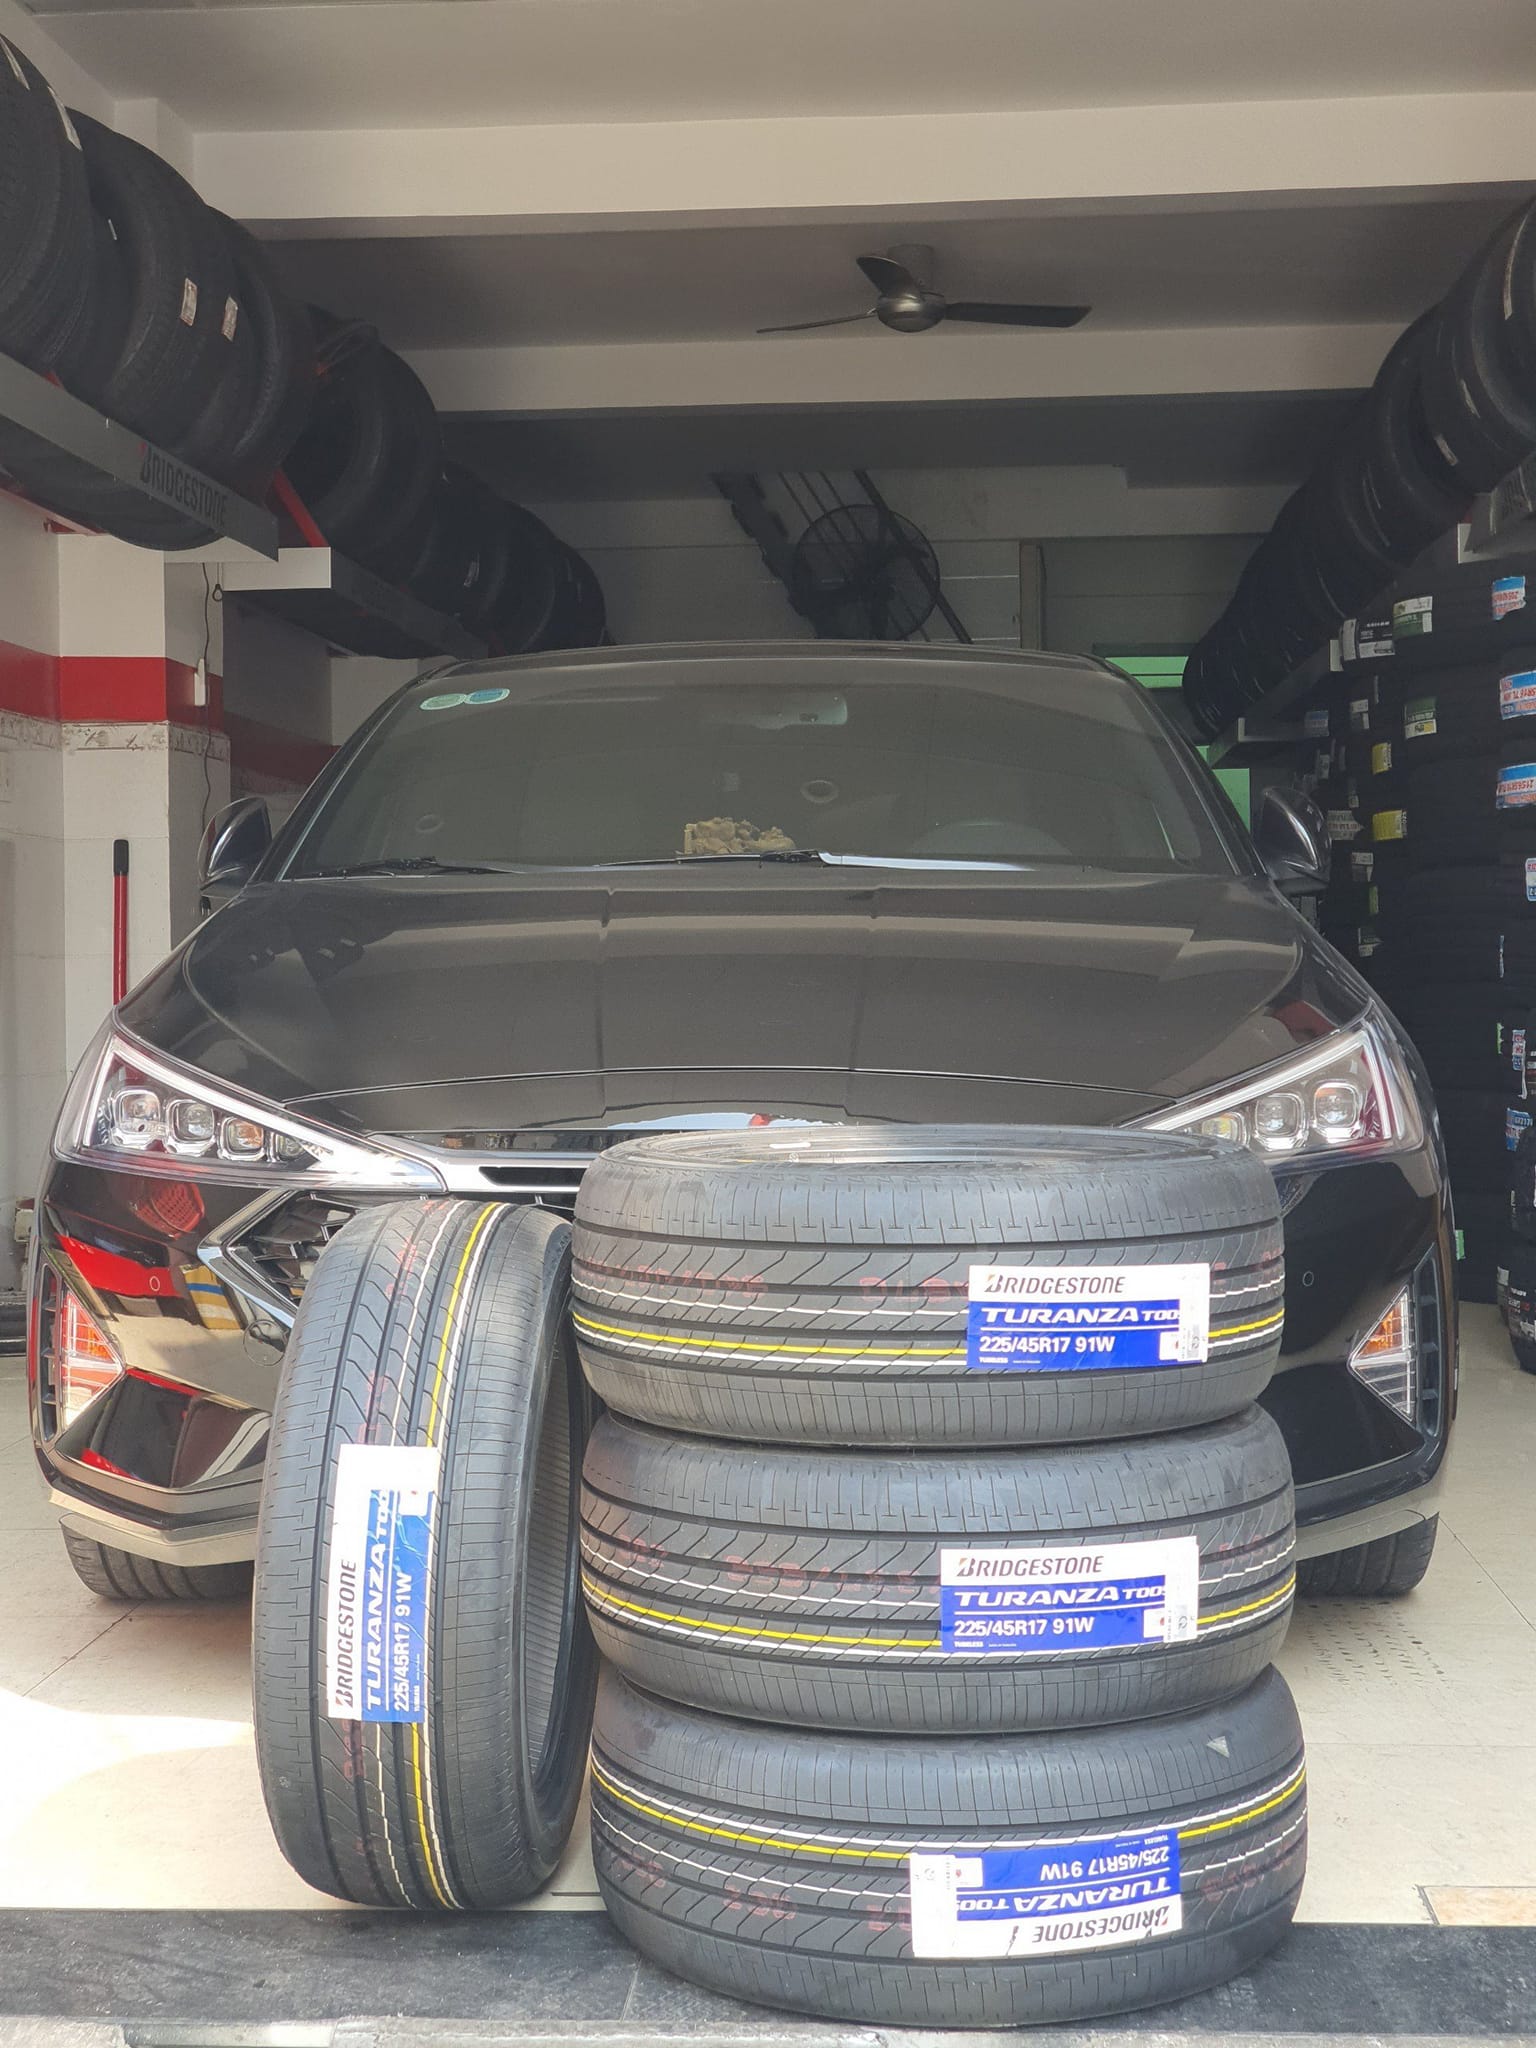 TƯ VẤN : Thay lốp xe Hyundai Elantra ở Biên Hoà, Đồng Nai.